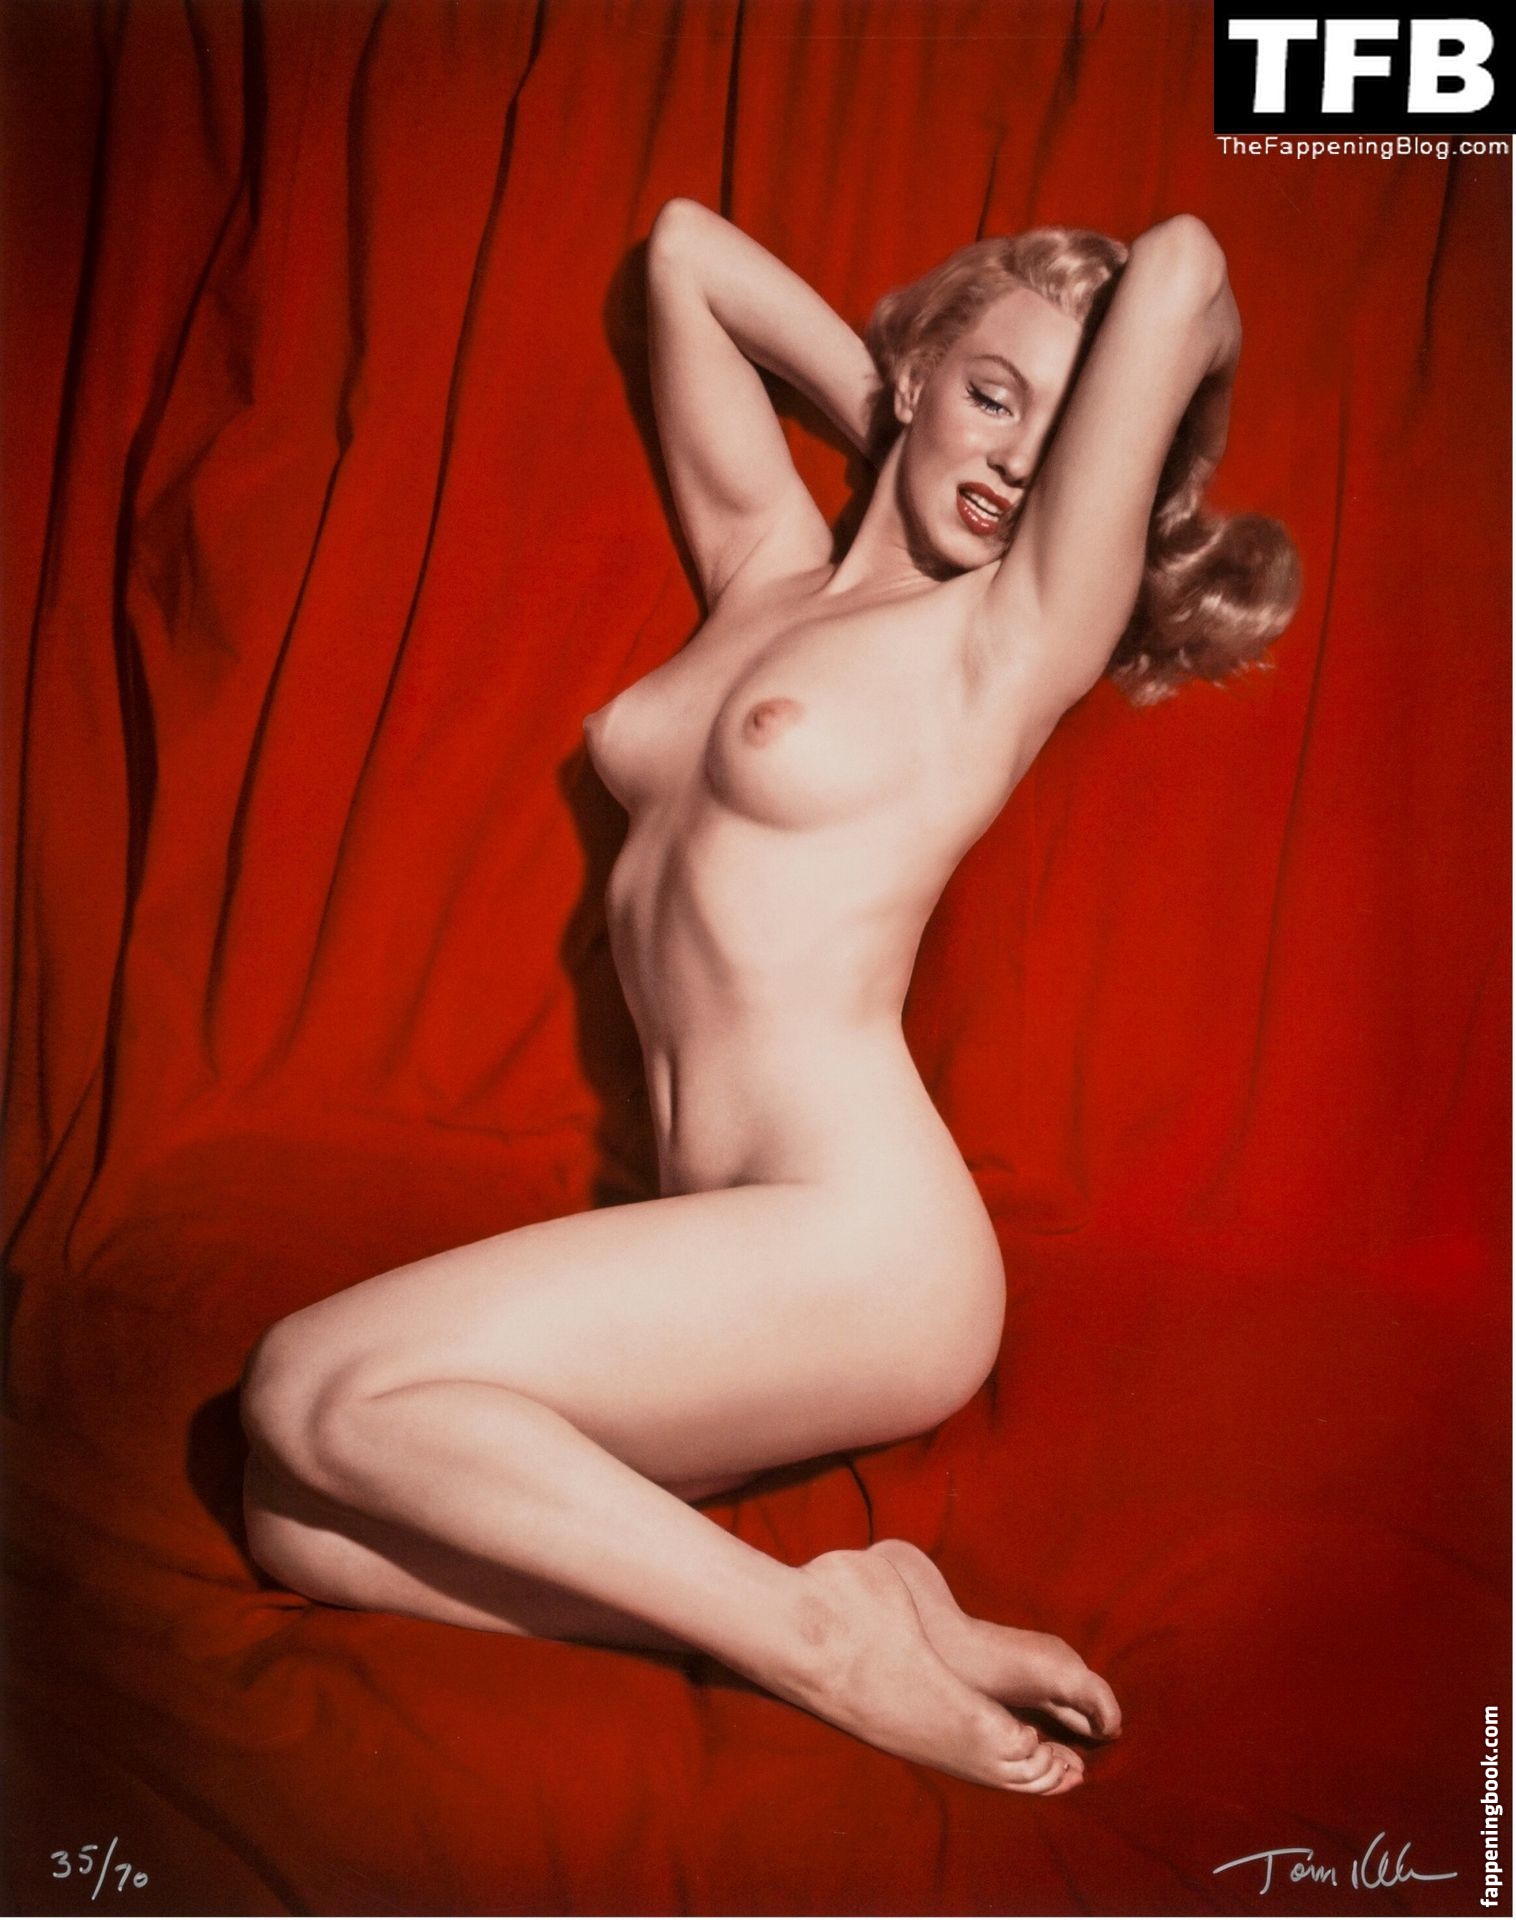 Marilyn Monroe Nude OnlyFans Leaks